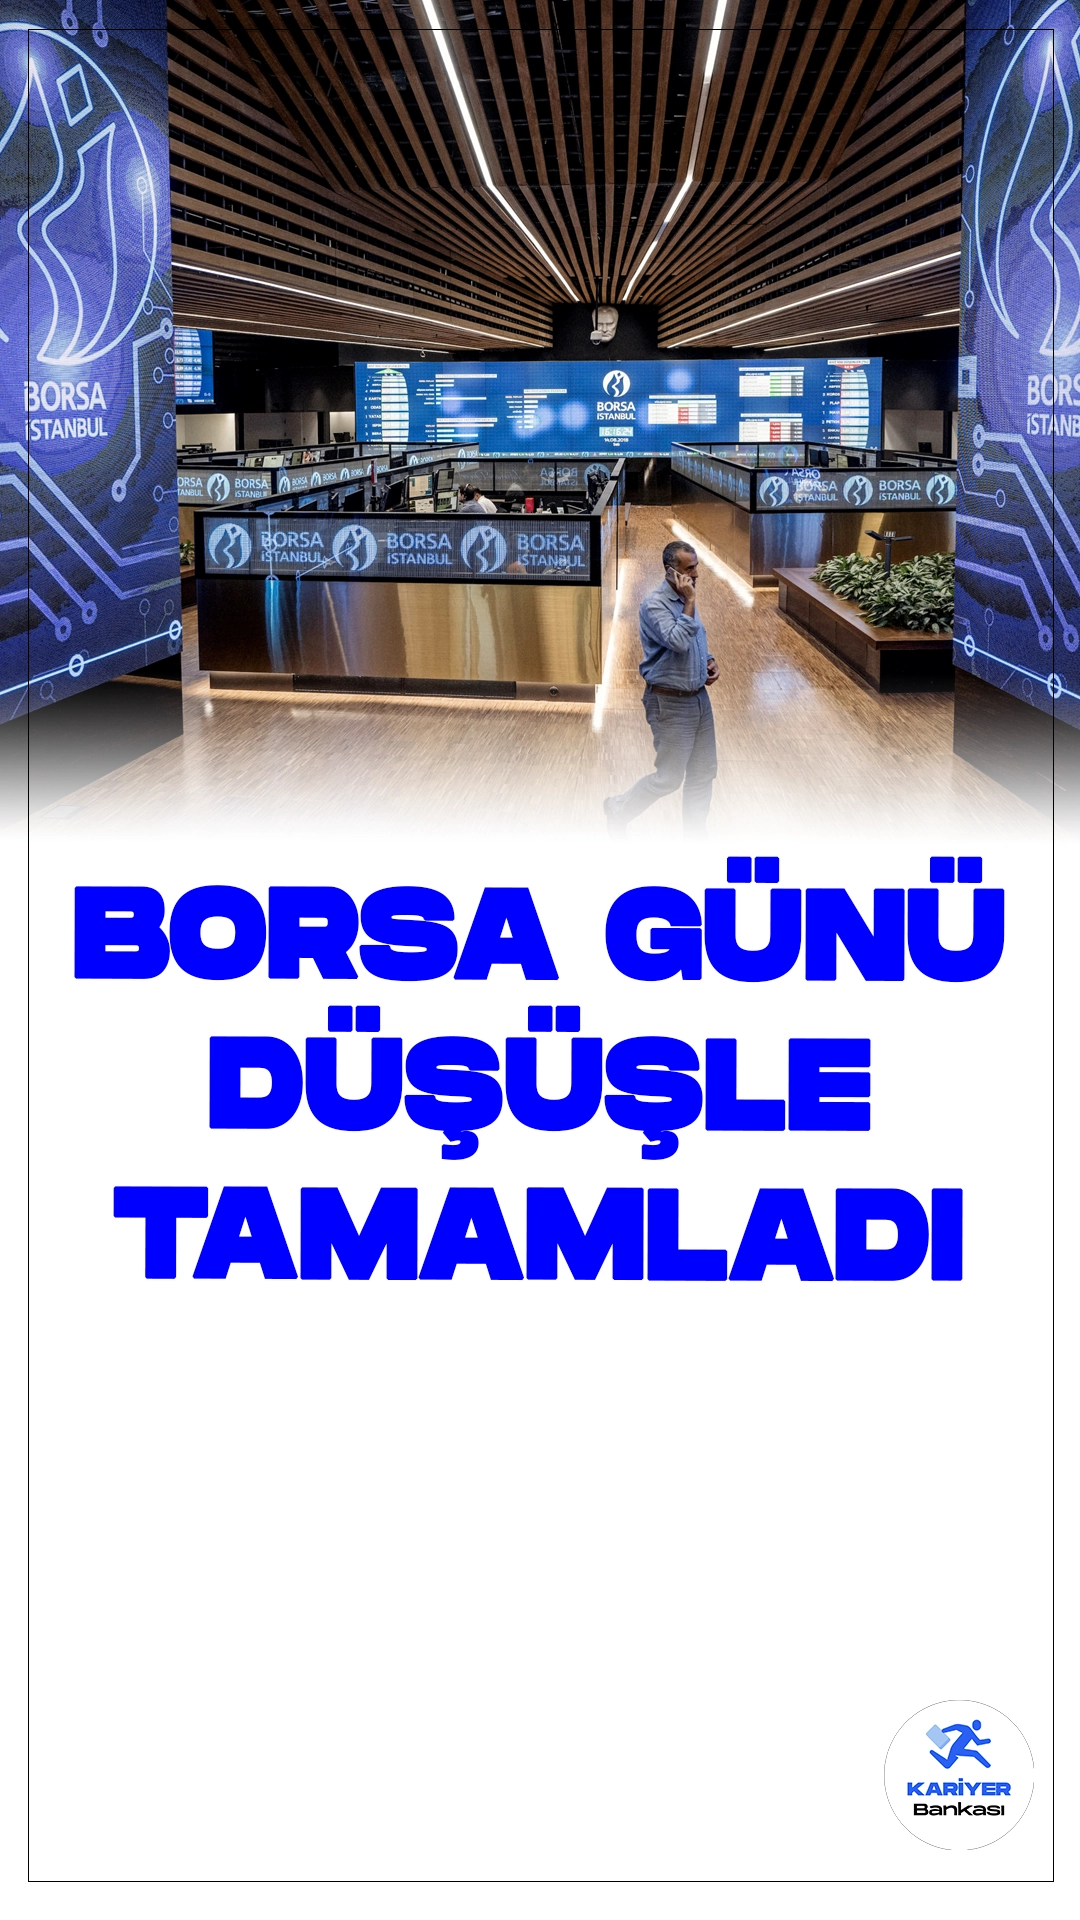 Borsa İstanbul Günü Düşüşle Tamamladı.Borsa İstanbul'da BIST 100 endeksi, günü yüzde 0,74 değer kaybederek 11.089,53 puandan kapattı. Bankacılık endeksi yüzde 1,92, holding endeksi ise yüzde 0,36 değer kaybı yaşadı. Sektörler arasında bilişim yüzde 3,97 ile en çok kazandıran, iletişim ise yüzde 2,69 ile en çok kaybettiren oldu.